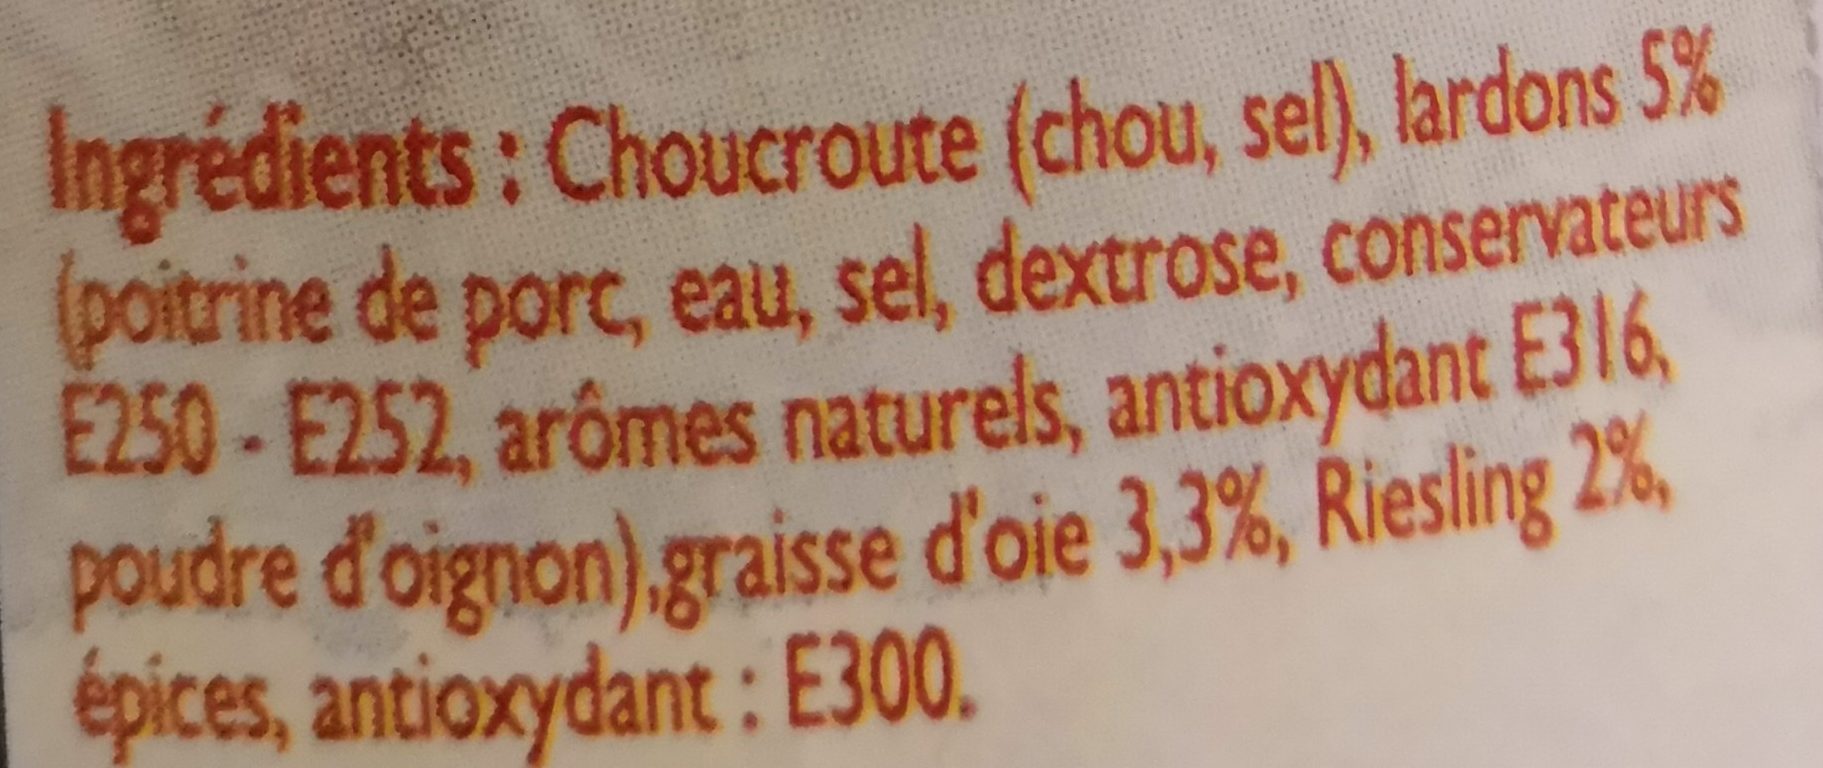 Choucroute Cuisinée à la Graisse d'Oie, Riesling et Lardons - Ingredients - fr